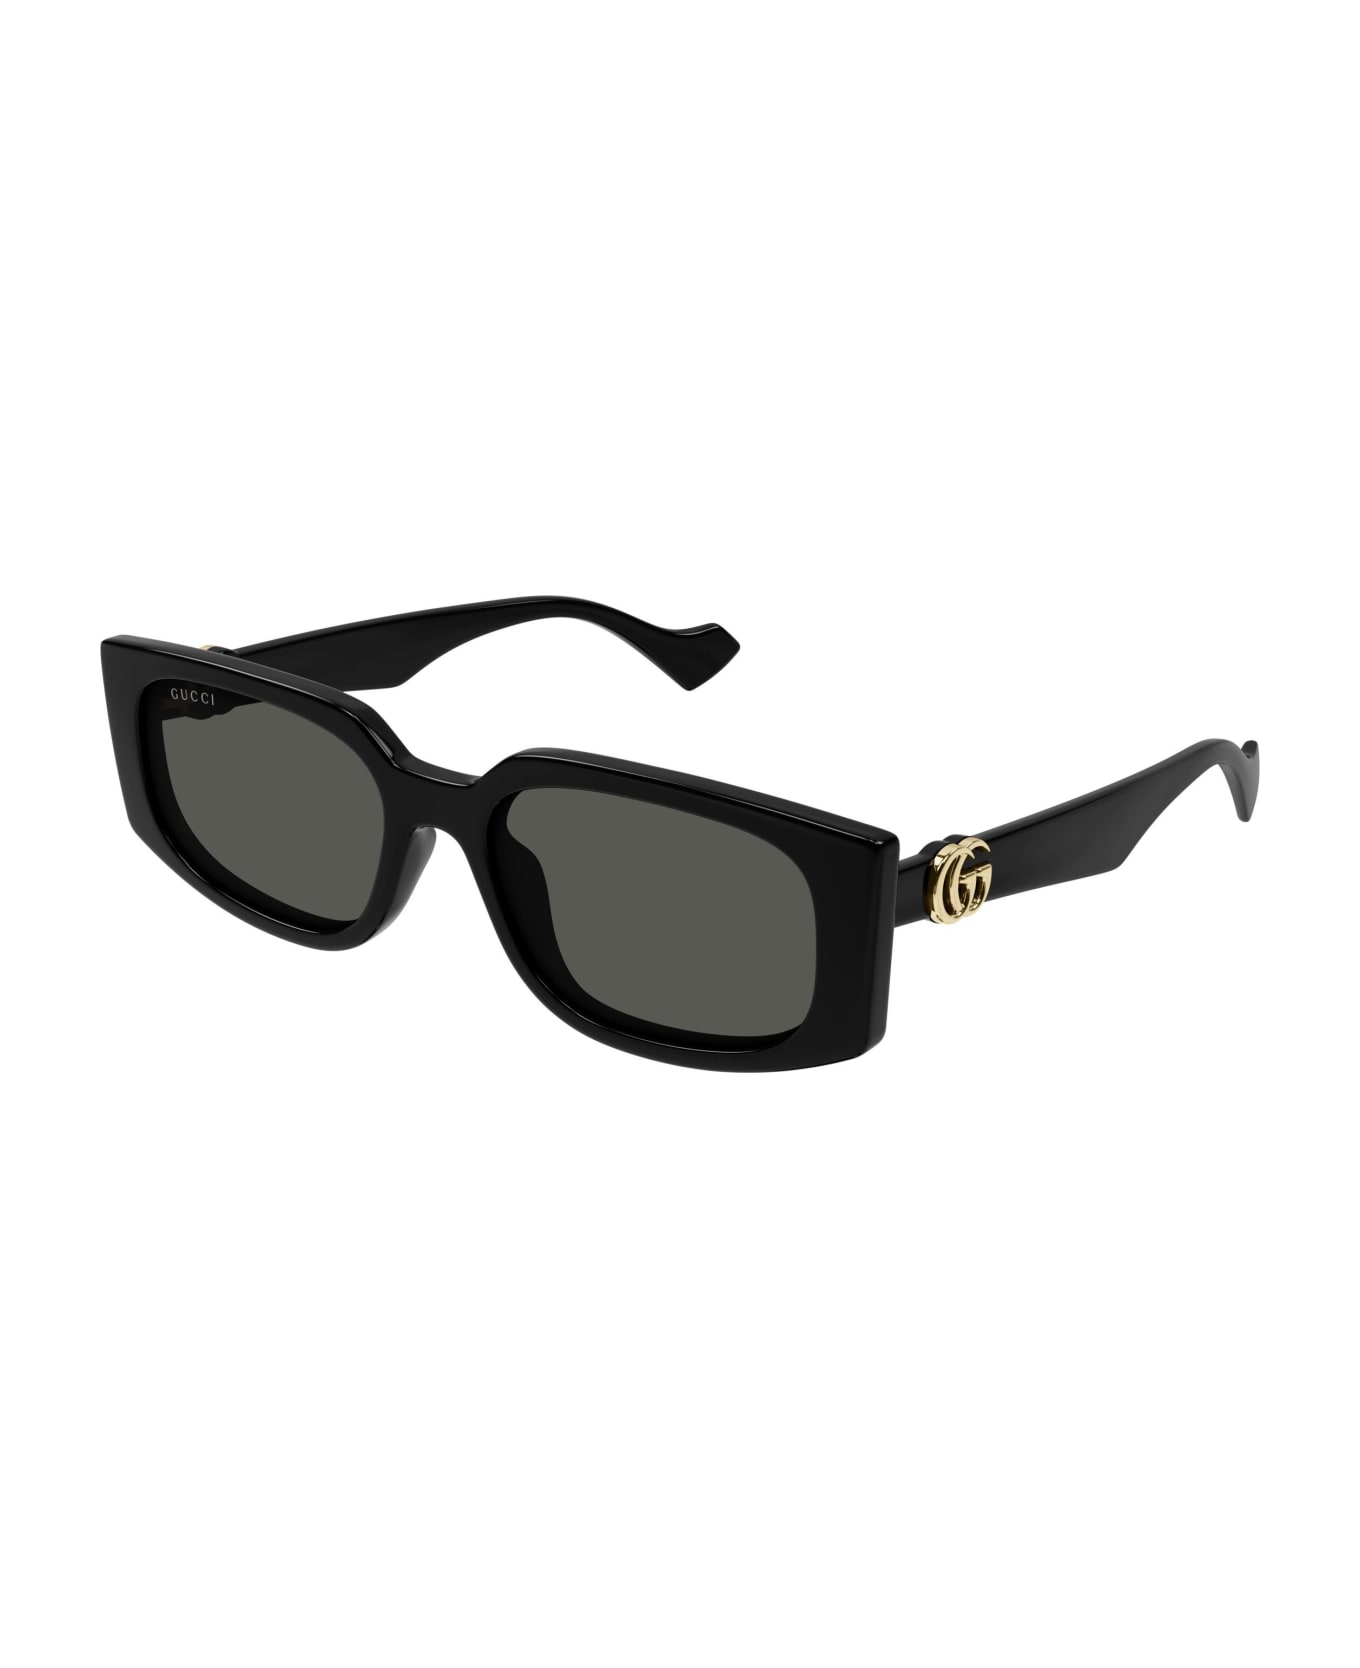 Gucci Eyewear Sunglasses - Nero/Grigio サングラス